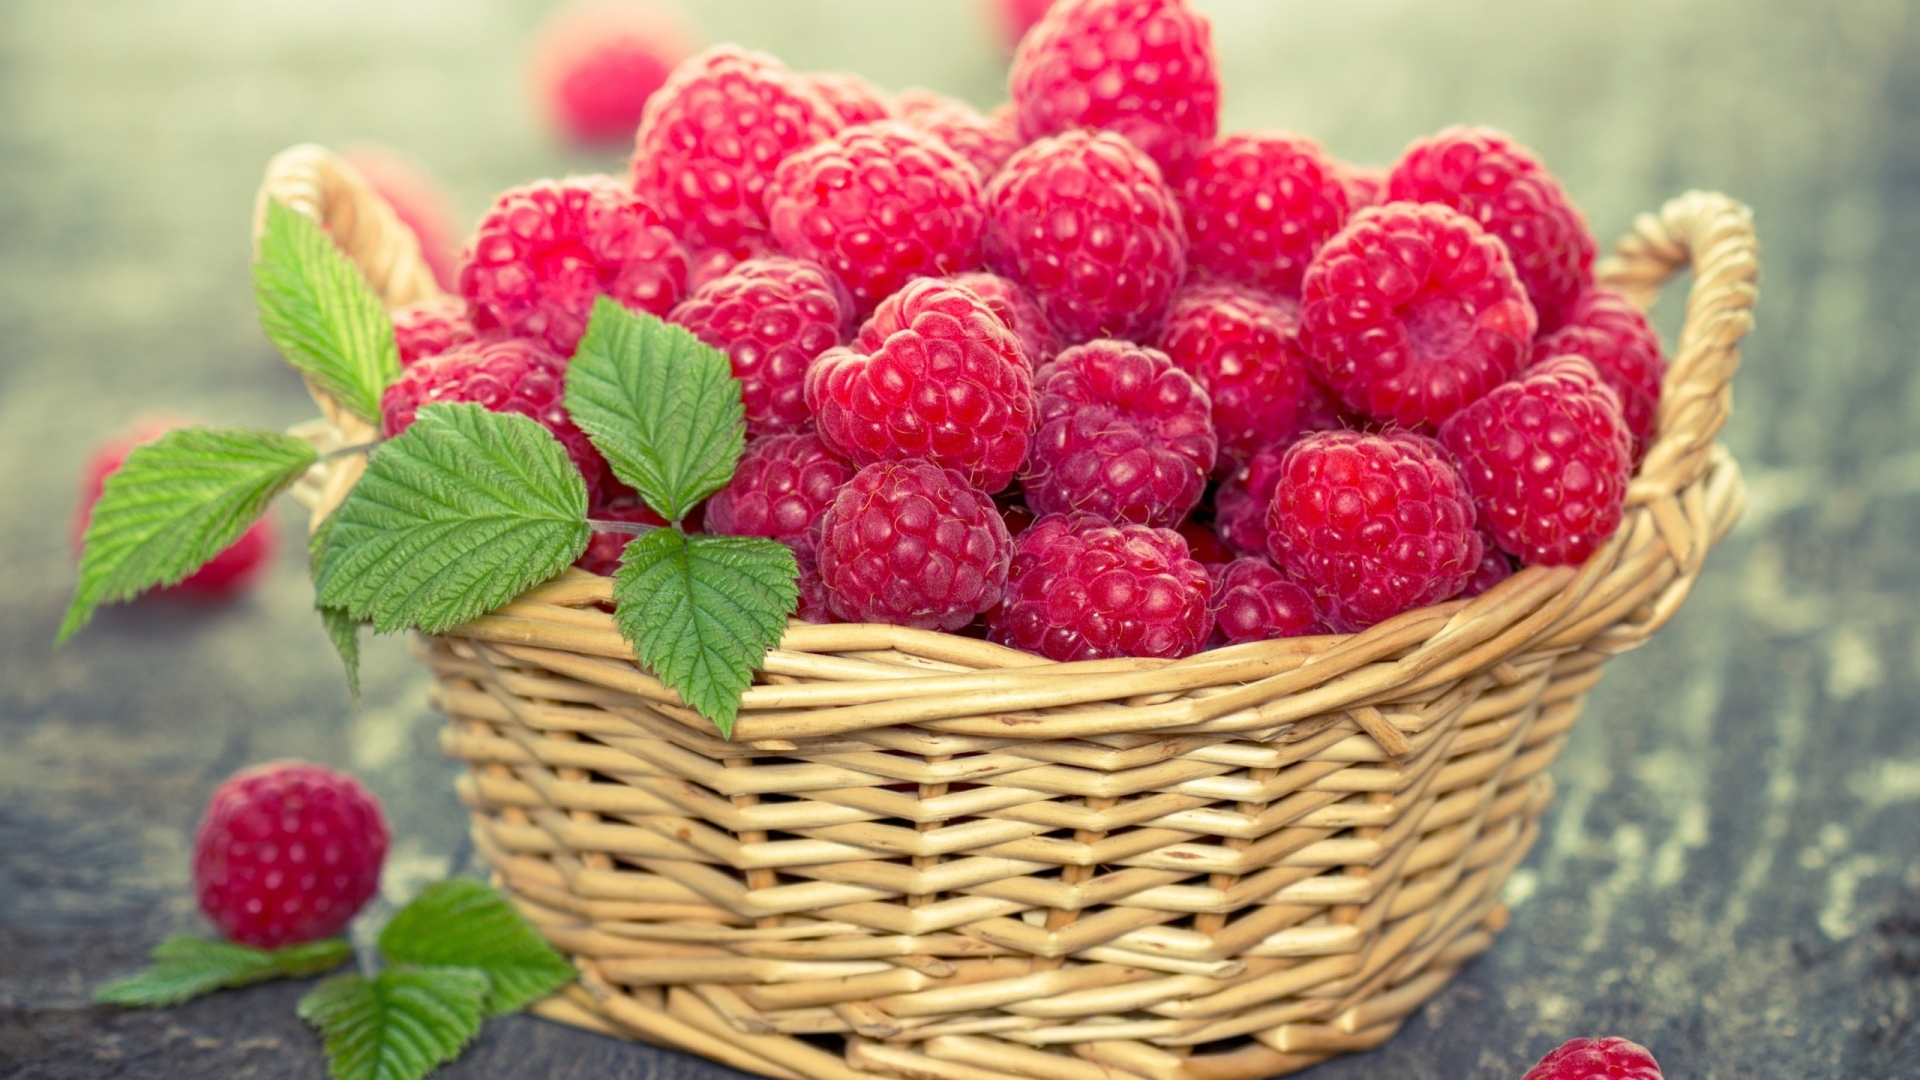 Basket of Raspberries for 1920 x 1080 HDTV 1080p resolution